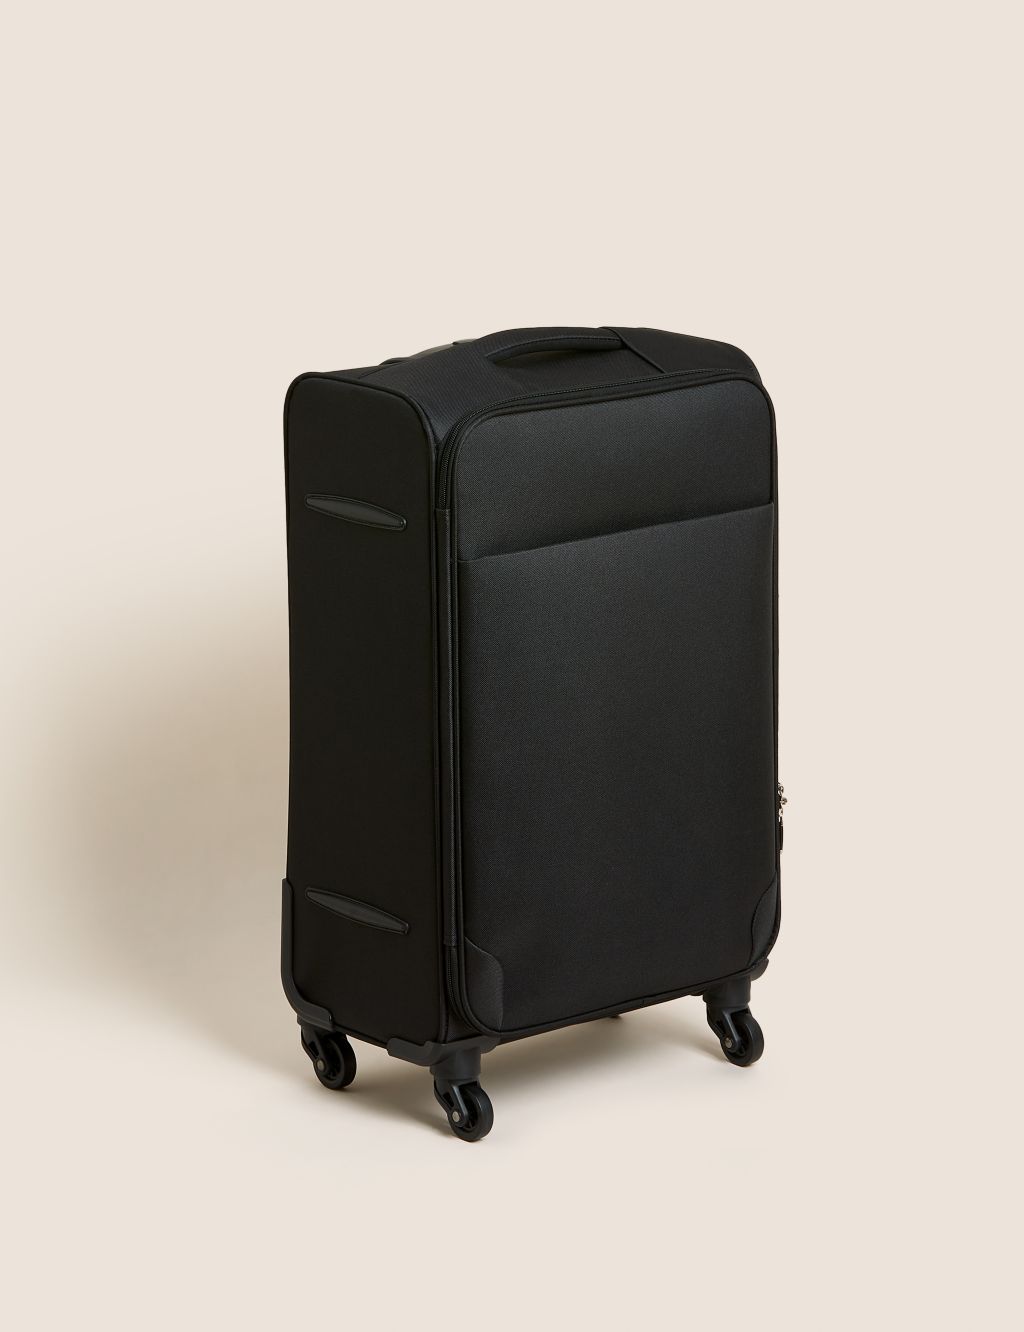 Palma 4 Wheel Soft Medium Suitcase image 1